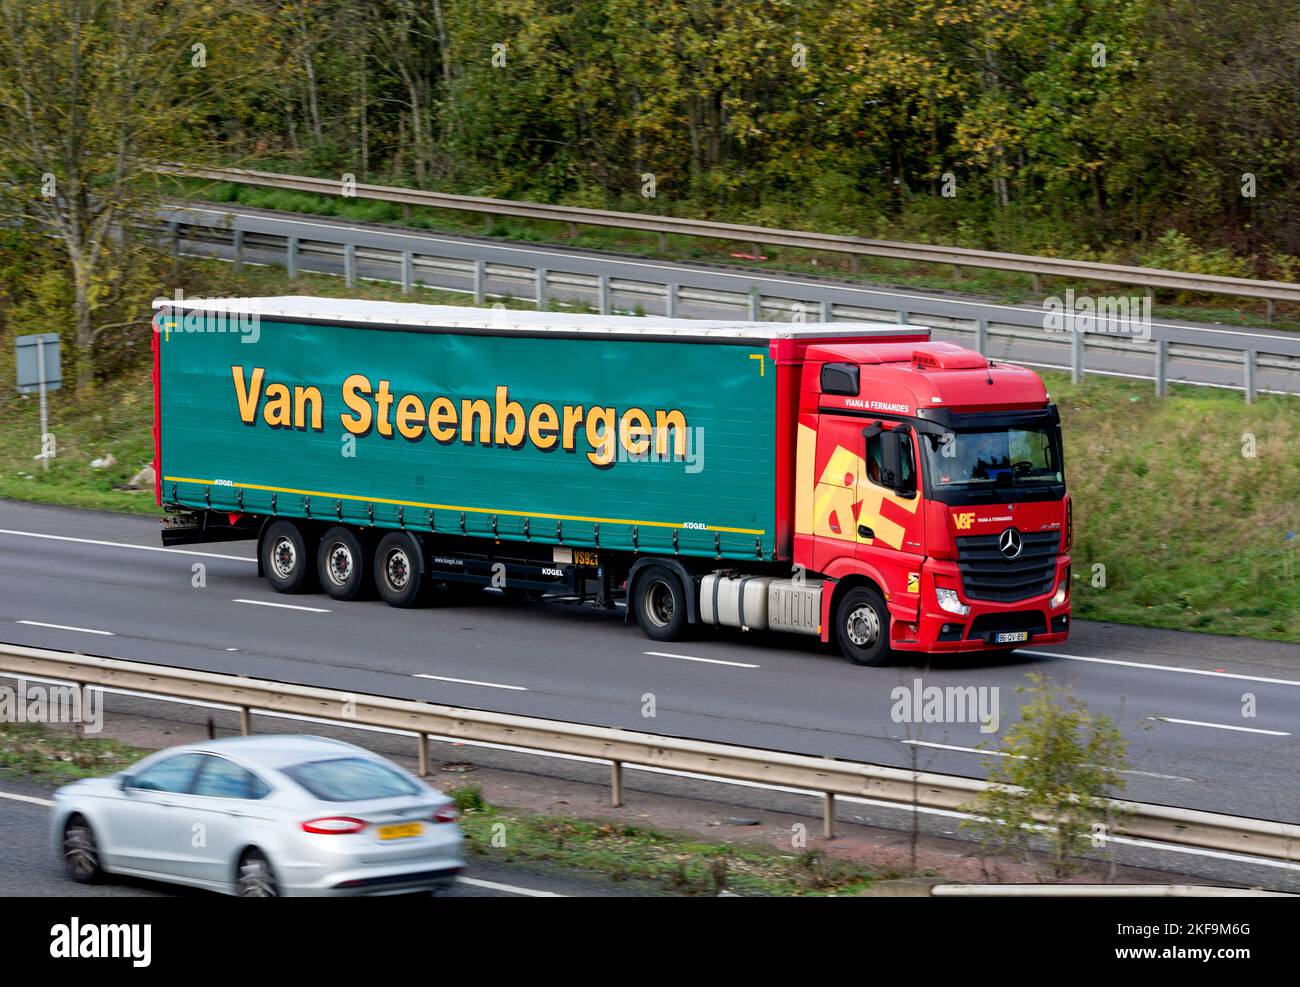 Van Steenbergen camion sulla M40 autostrada, Warwickshire, Regno Unito Foto Stock